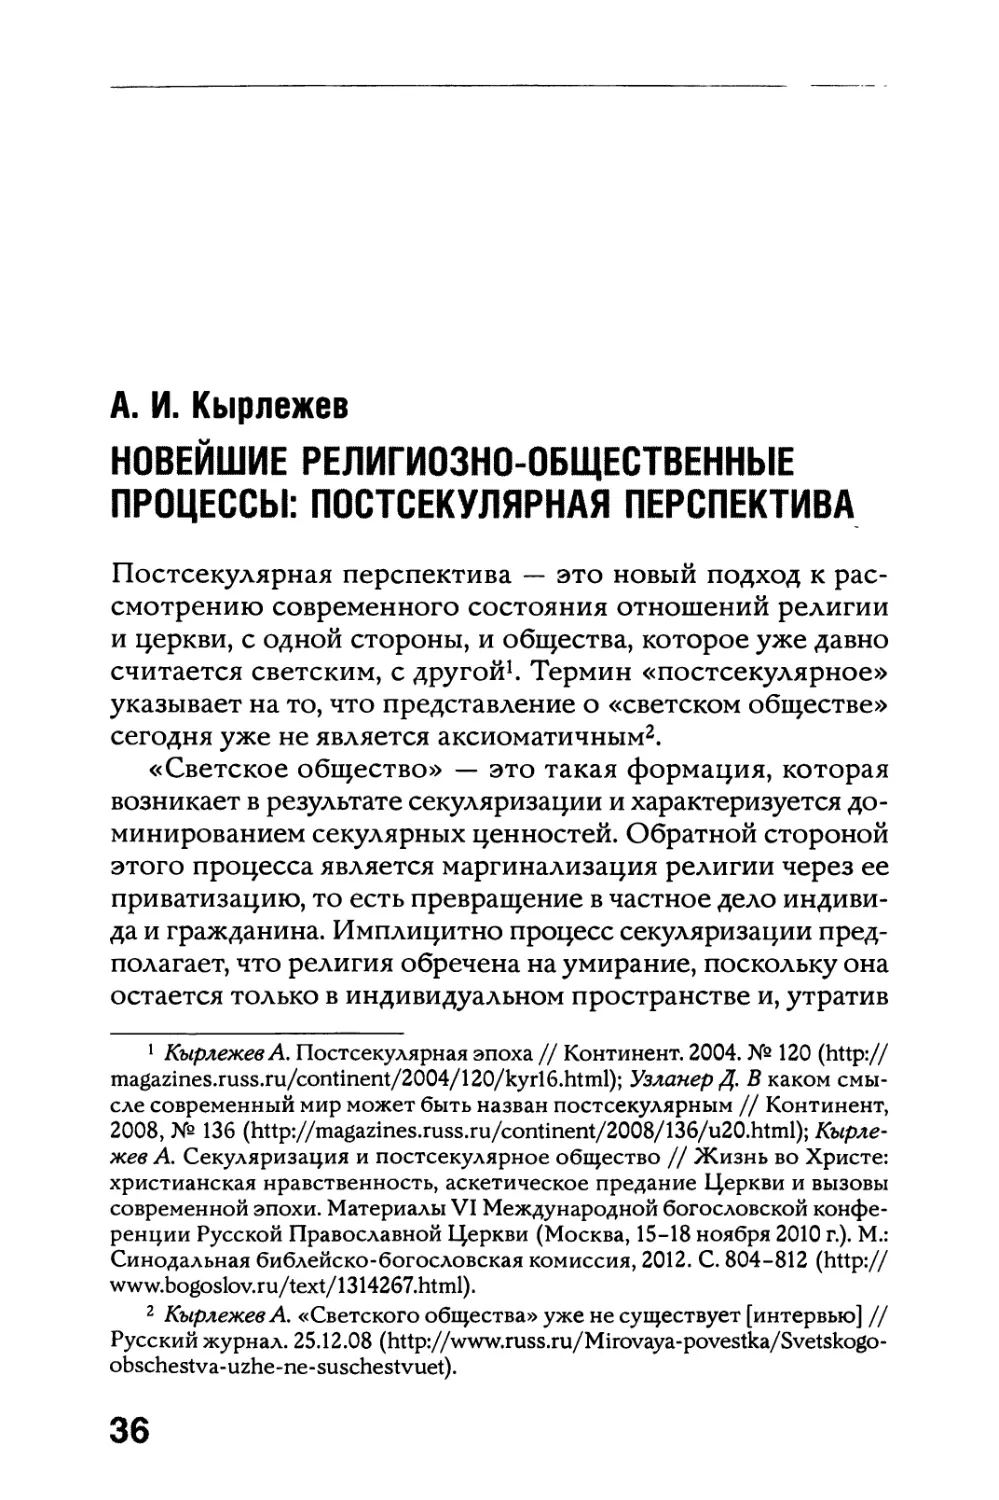 А. И. Кырлежев. Новейшие религиозно-общественные процессы: постсекулярная перспектива